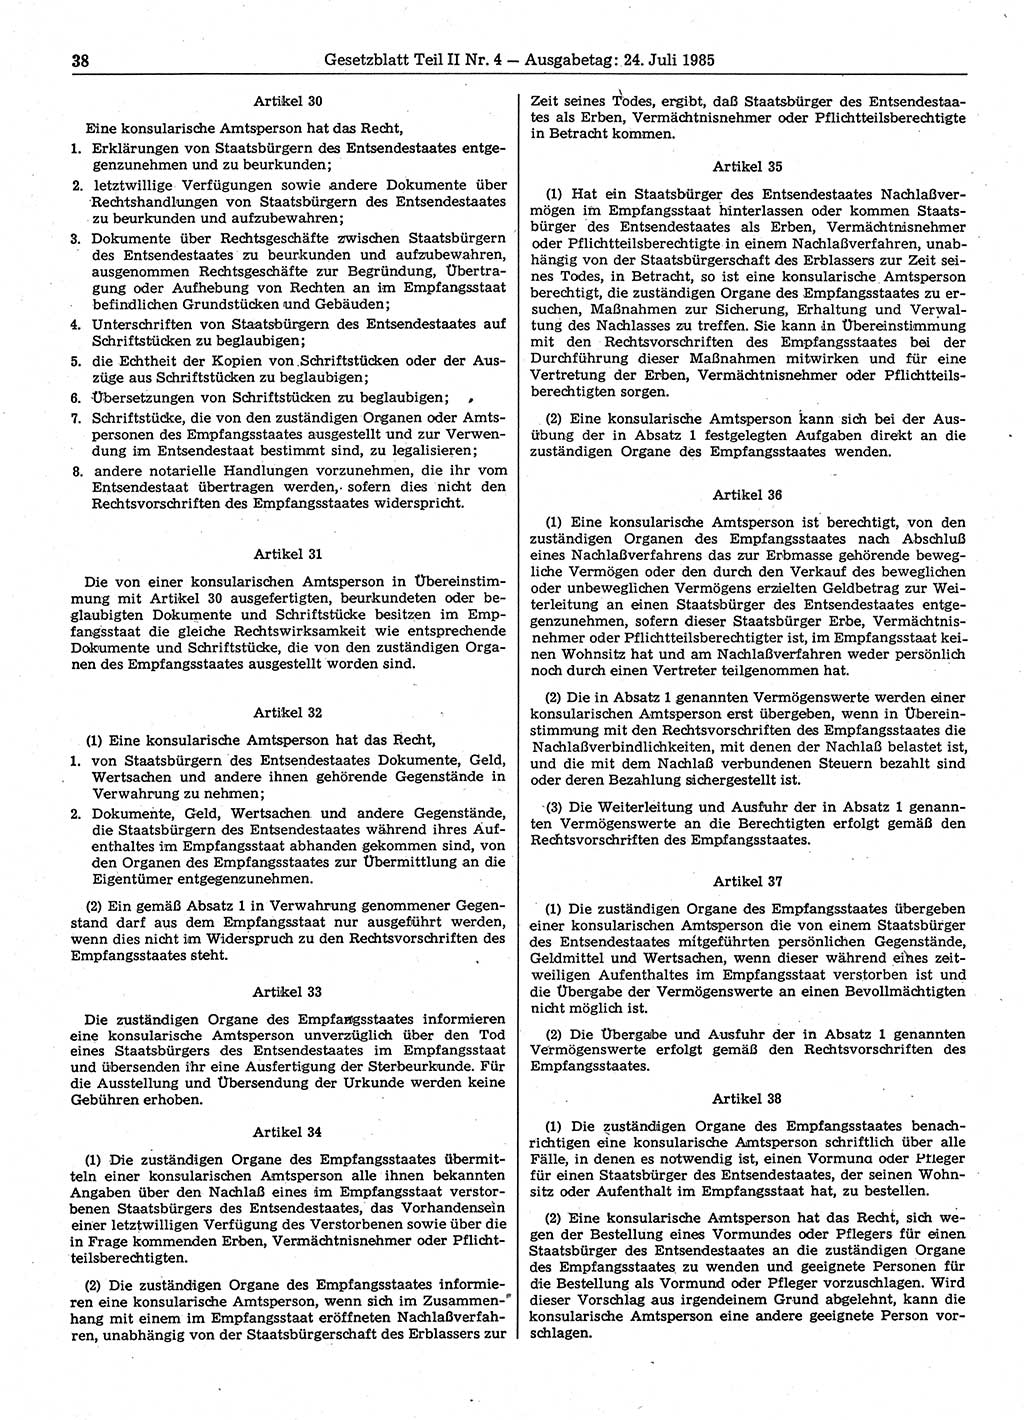 Gesetzblatt (GBl.) der Deutschen Demokratischen Republik (DDR) Teil ⅠⅠ 1985, Seite 38 (GBl. DDR ⅠⅠ 1985, S. 38)